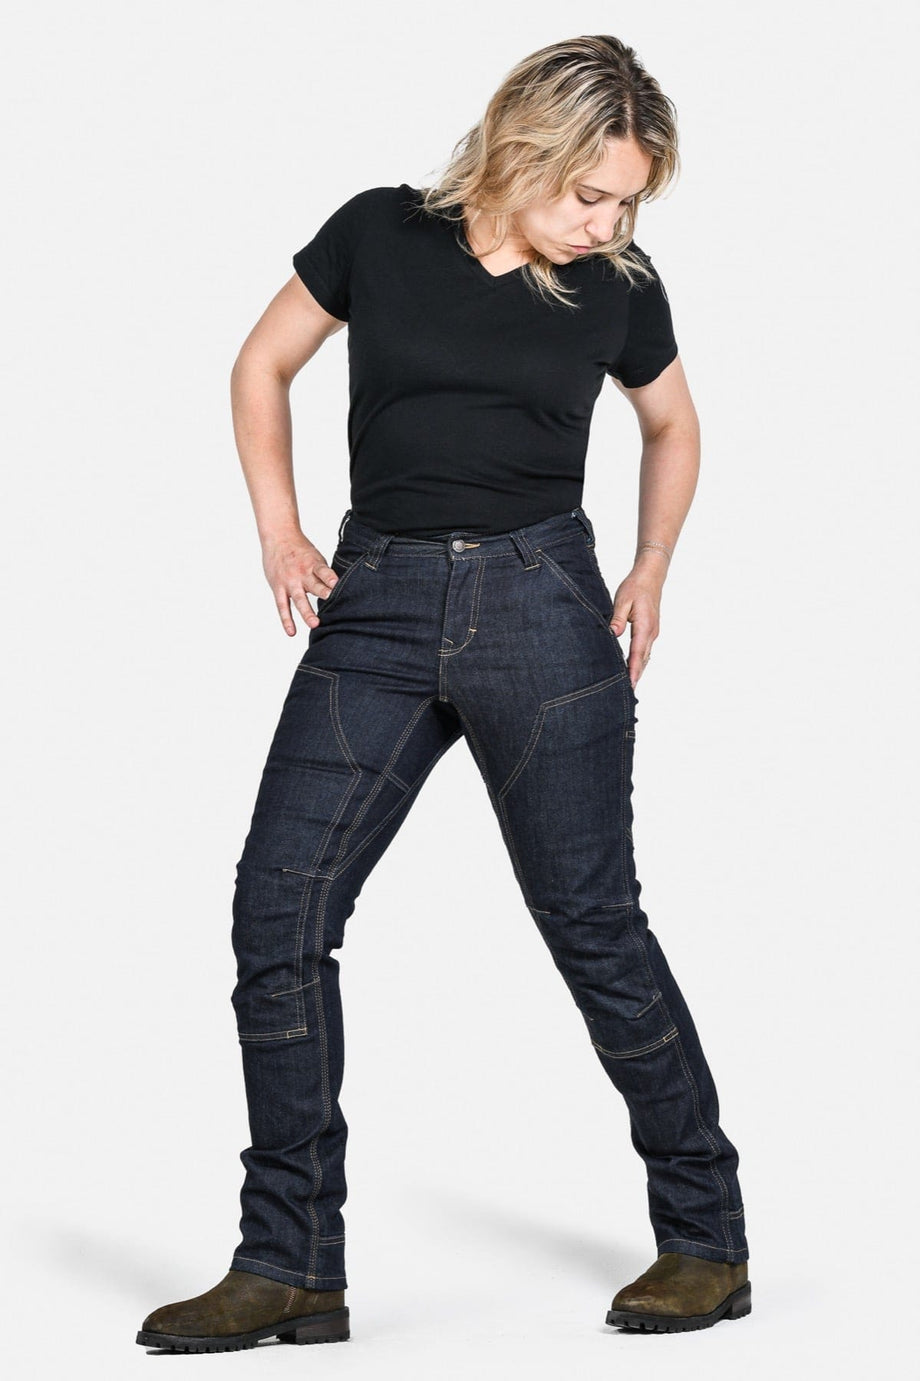 Dovetail Workwear Women's DX Bootcut Denim Jean in Indigo - Jeans